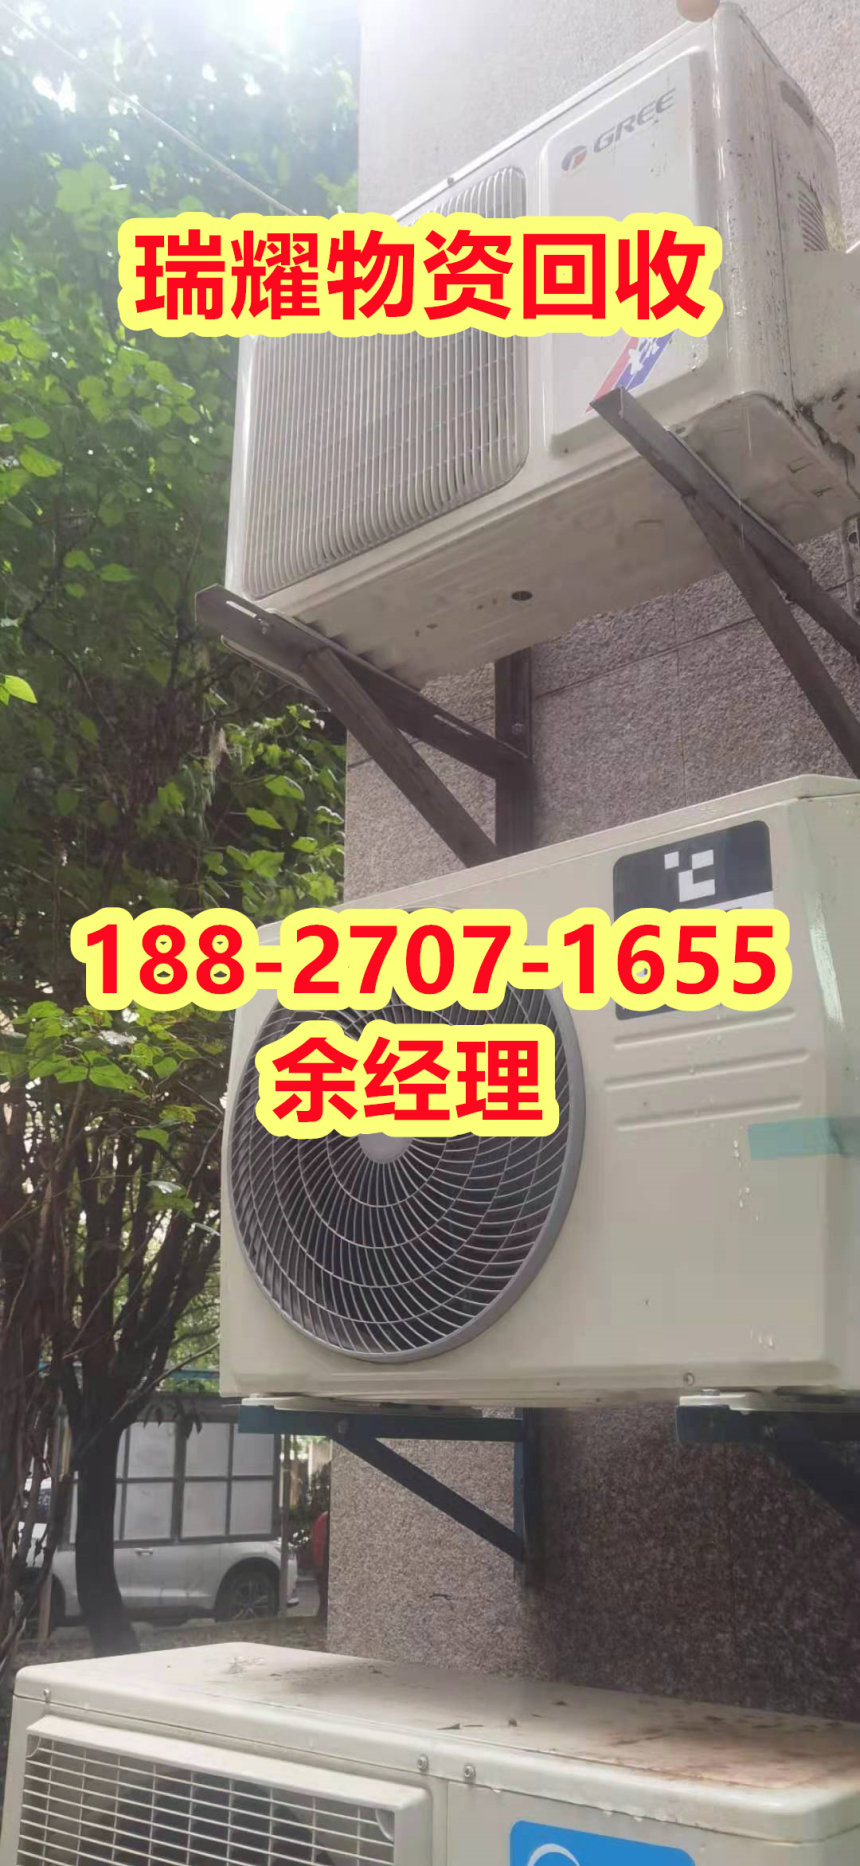 空调回收中央空调回收电话武汉江岸区回收热线